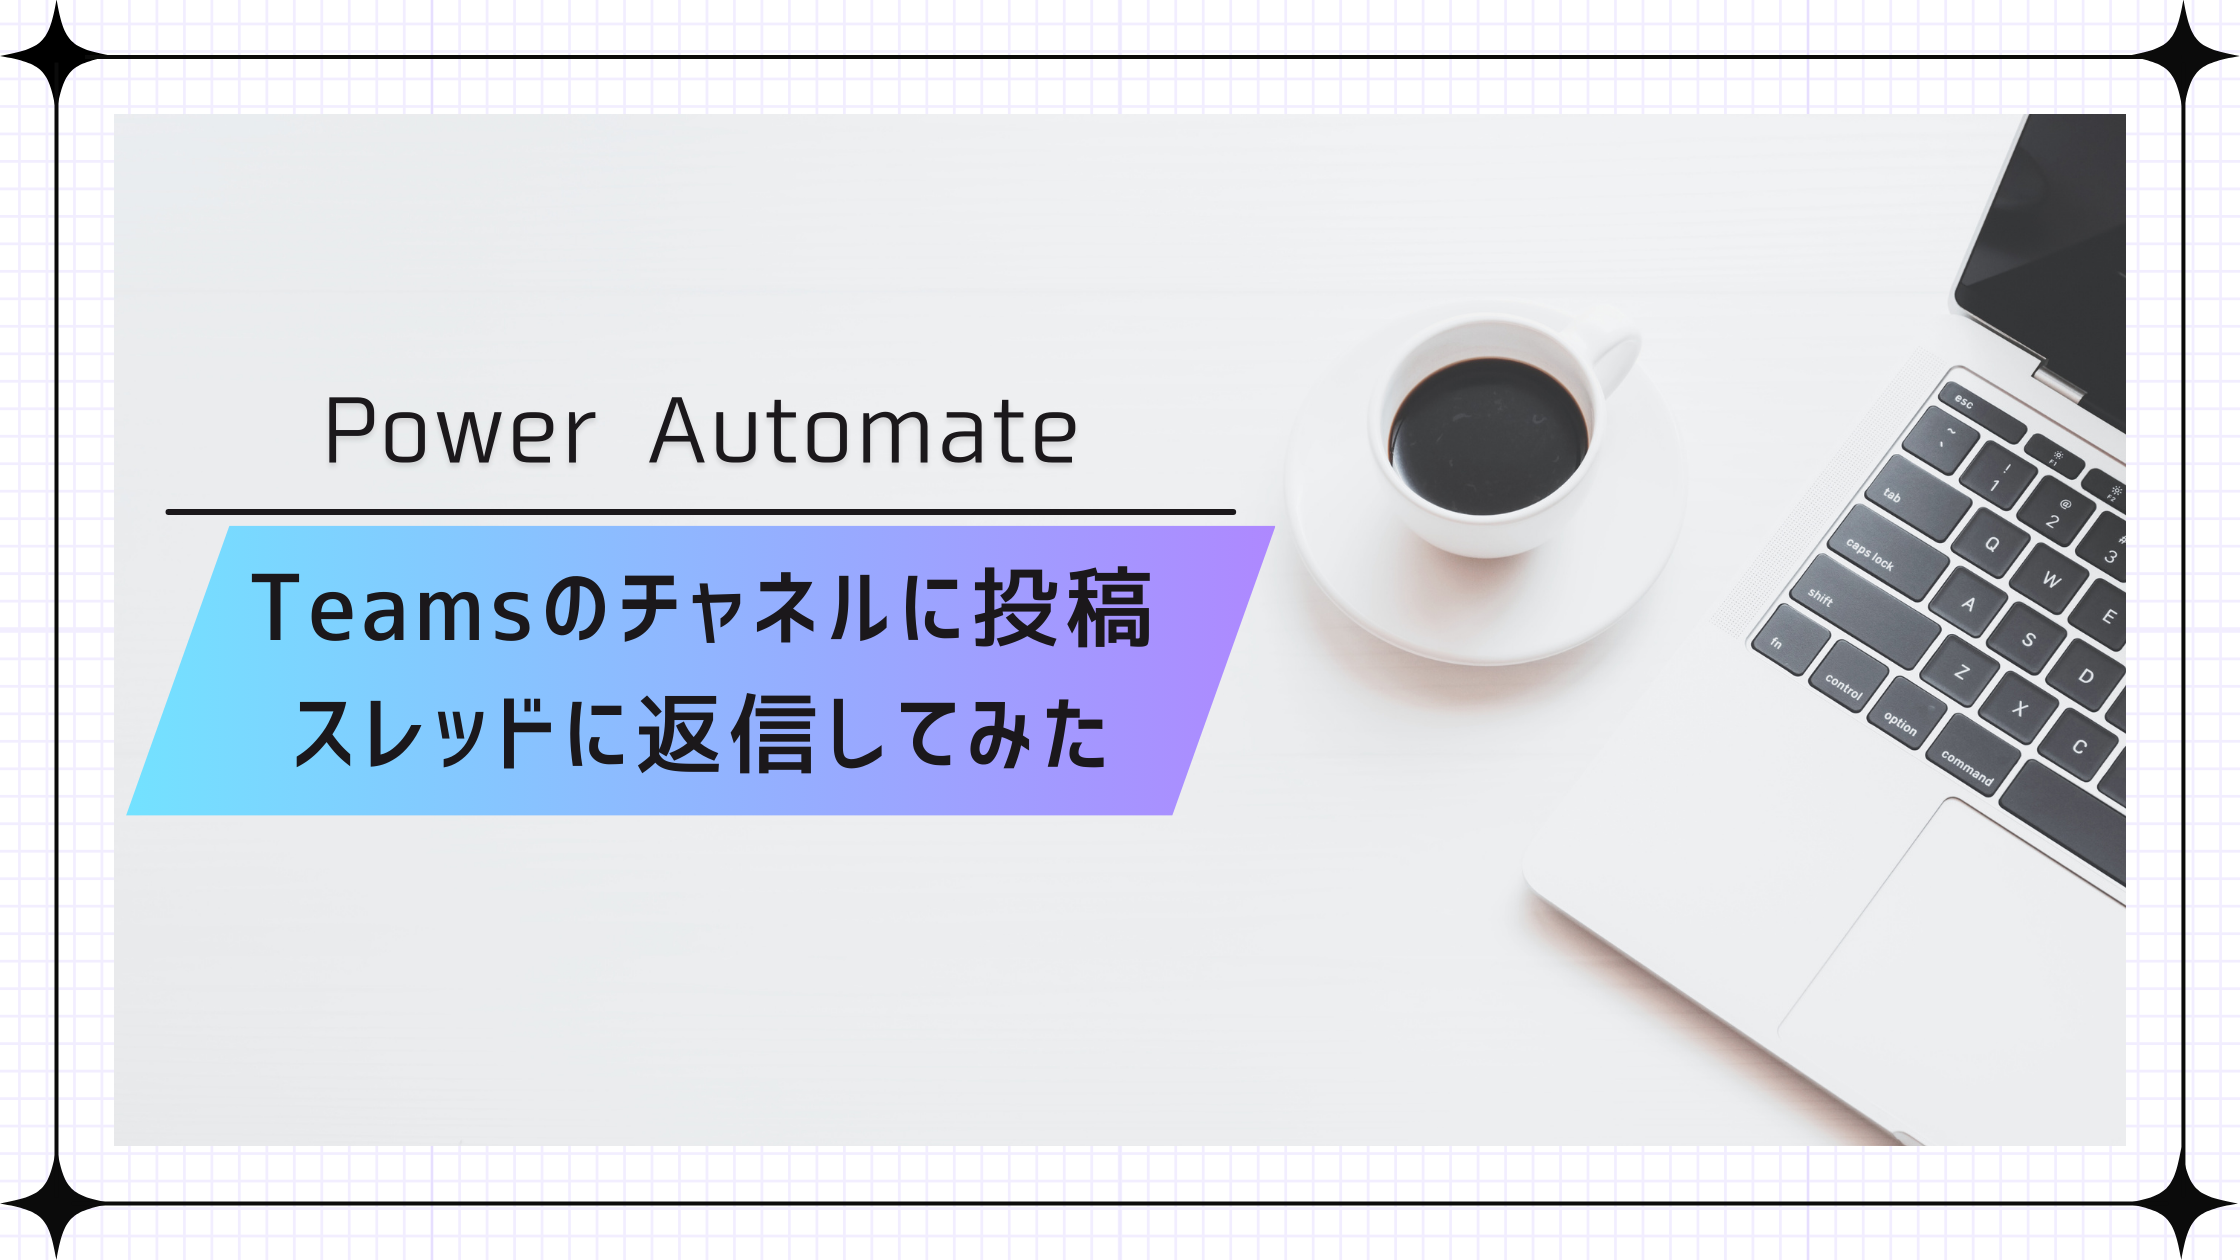 Power Automate Desktop で Webスク レイピング してみた ～PDFから表の抽出～